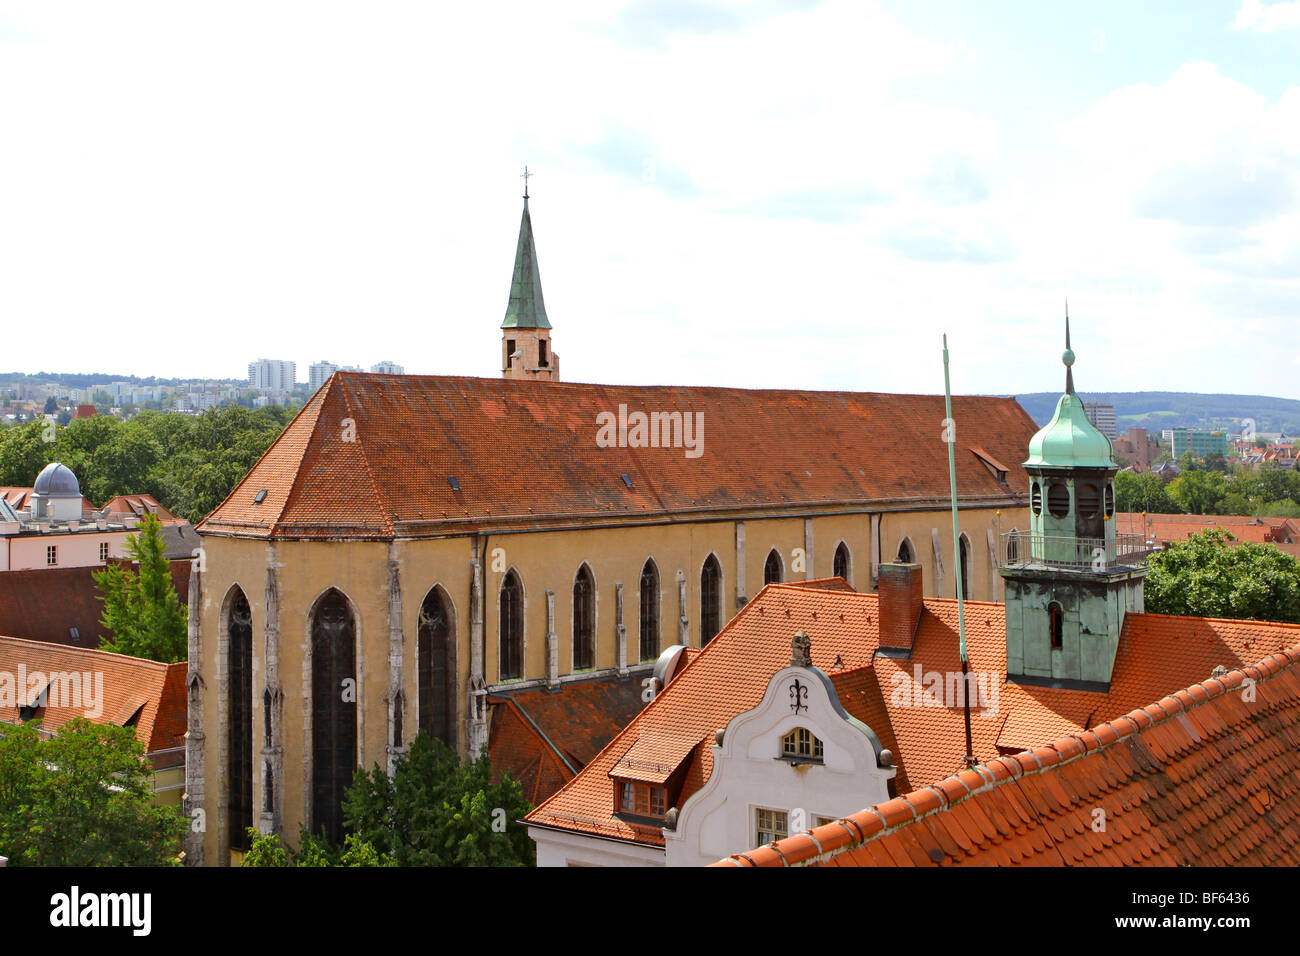 Deutschland, Regensburger Altstadt, Alemania, el casco antiguo de Regensburg Foto de stock